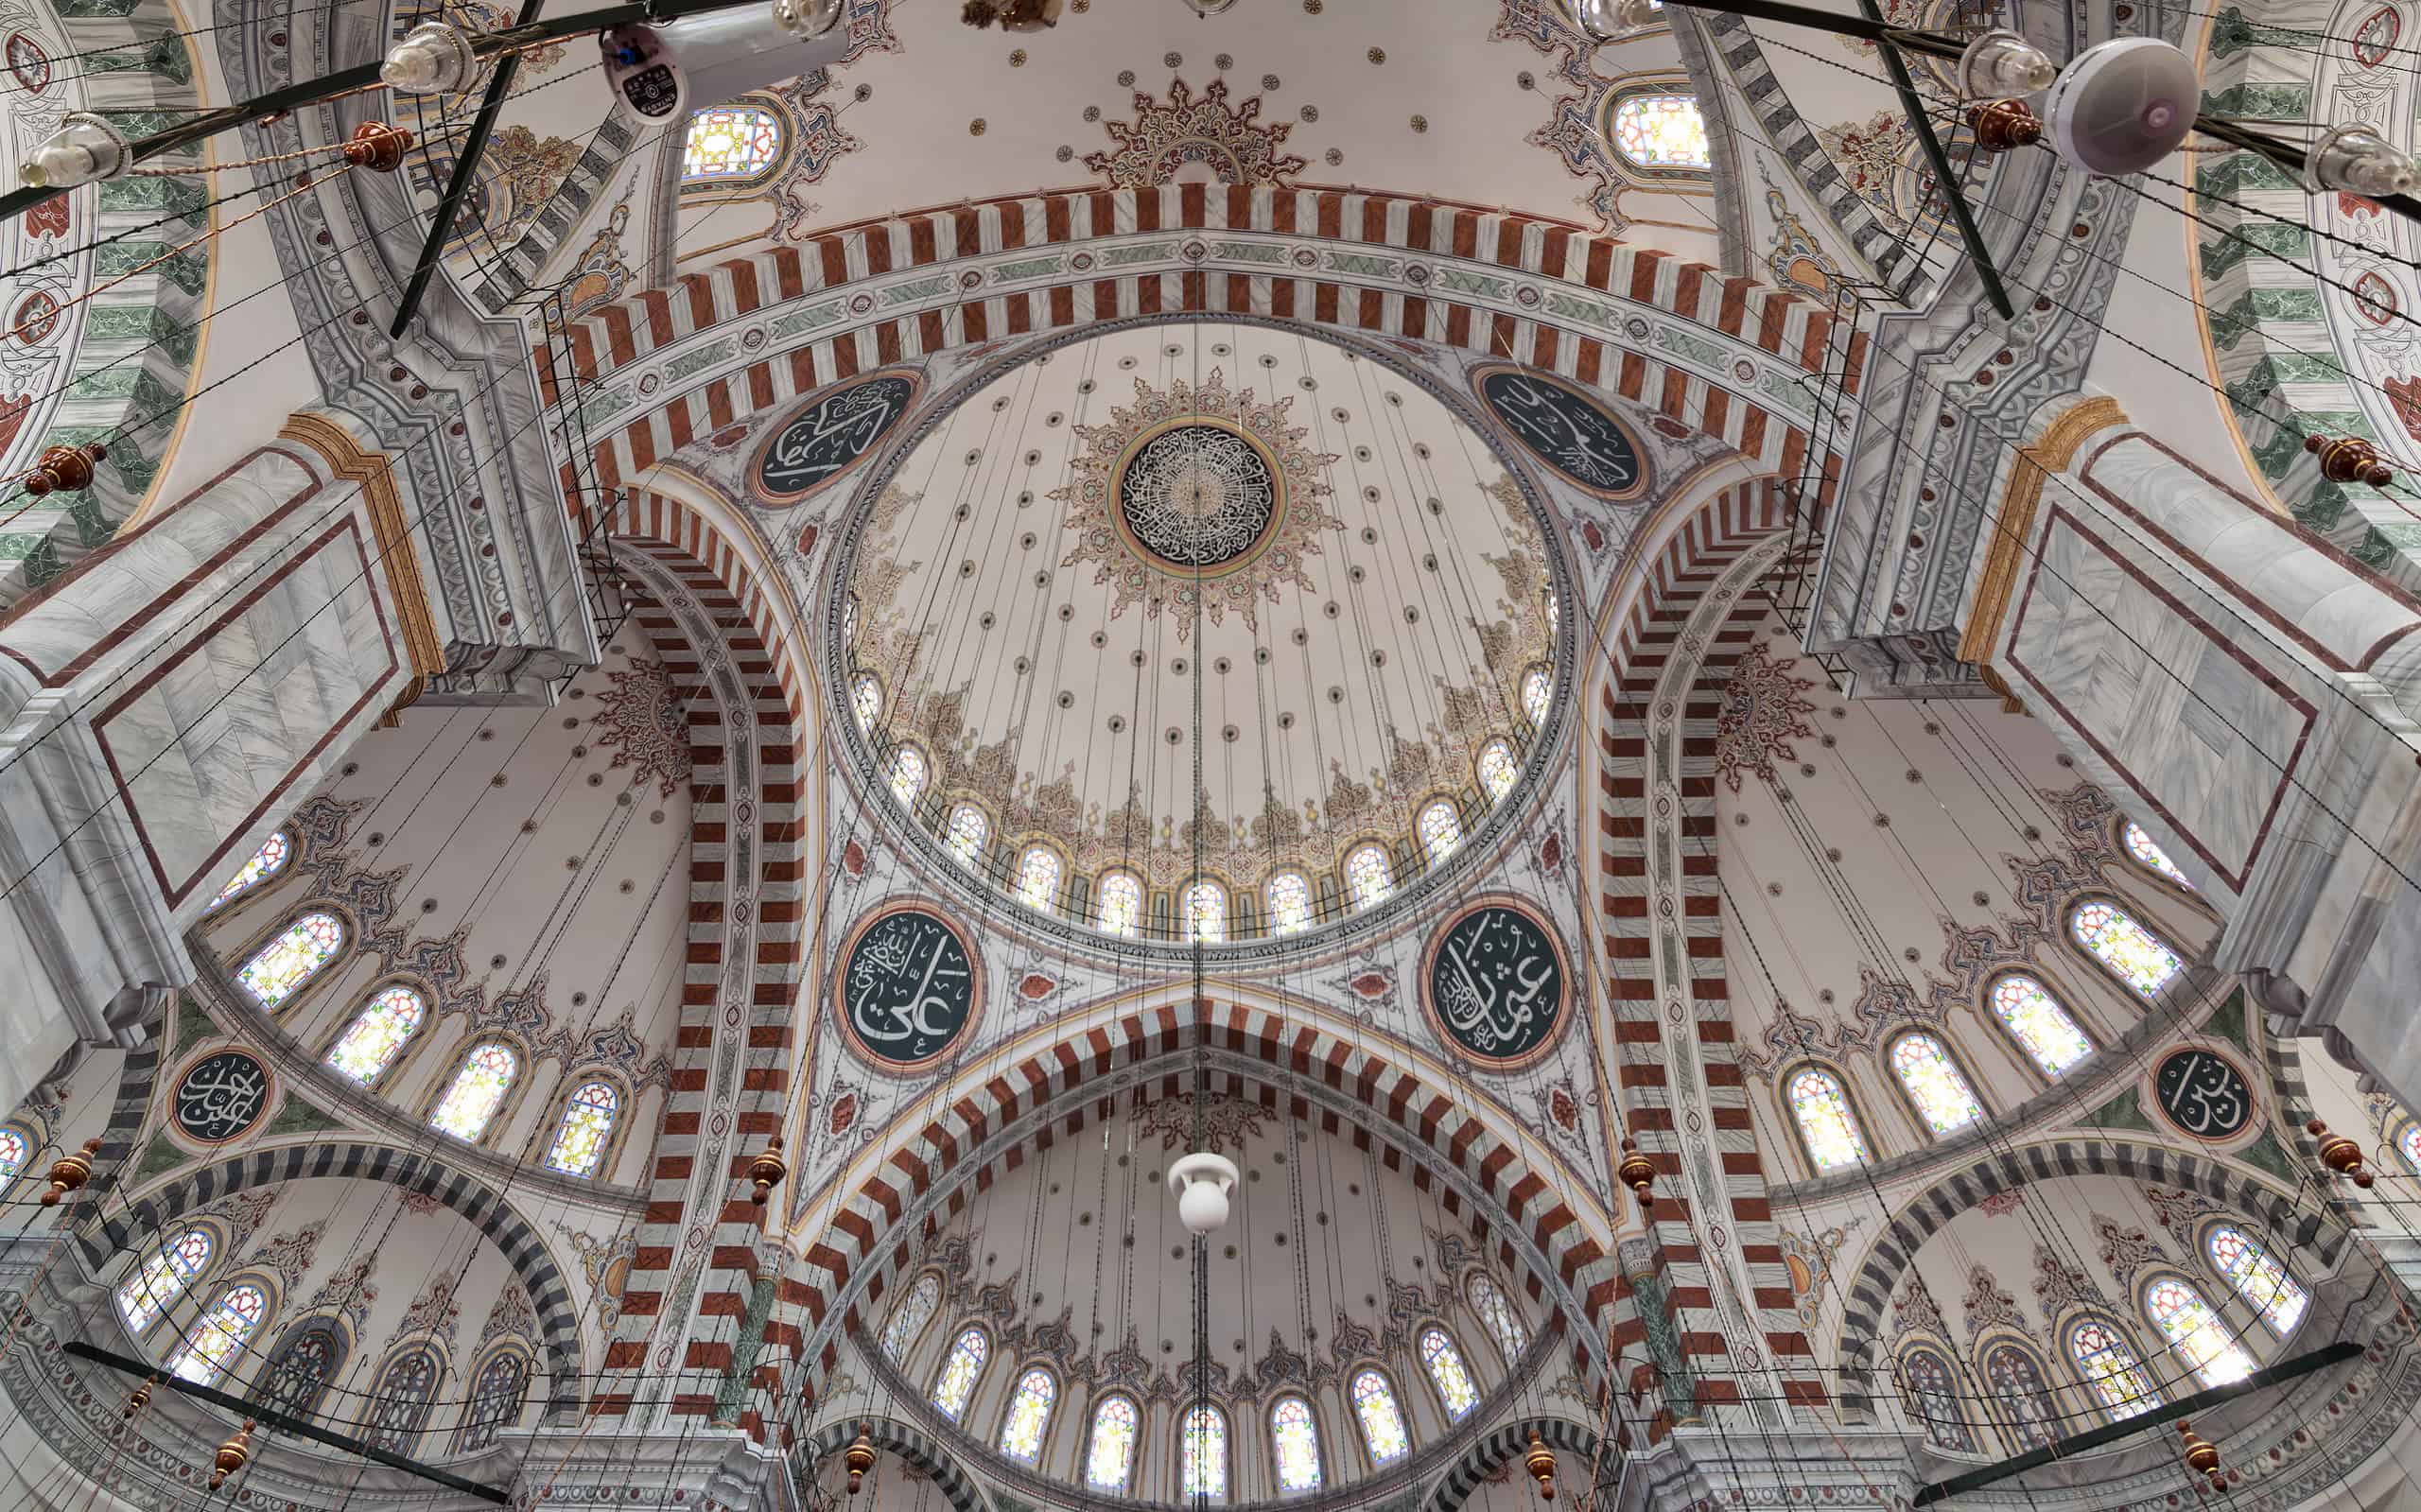 Soffitto della moschea ottomana Fatih a Istanbul, Turchia, costituito da una serie di cupole decorate basate sull'arte islamica